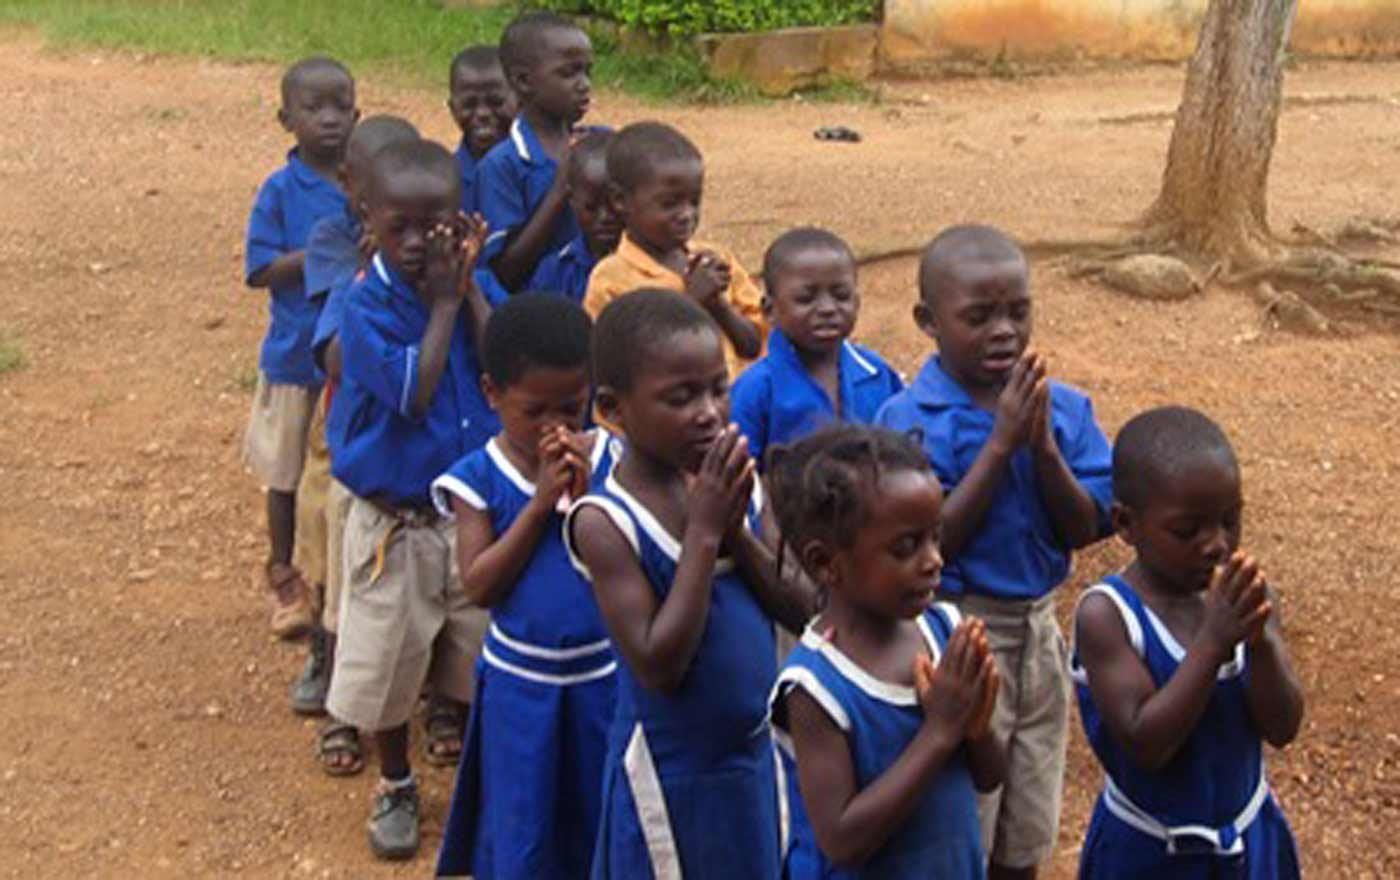 Schülerinnen und Schüler im ghanaischen Adumasa. Hier unterhält der Evangelische Arbeitskreis für Weltmission (EAWM) mehrere Projekte. Foto: EAWM/privat